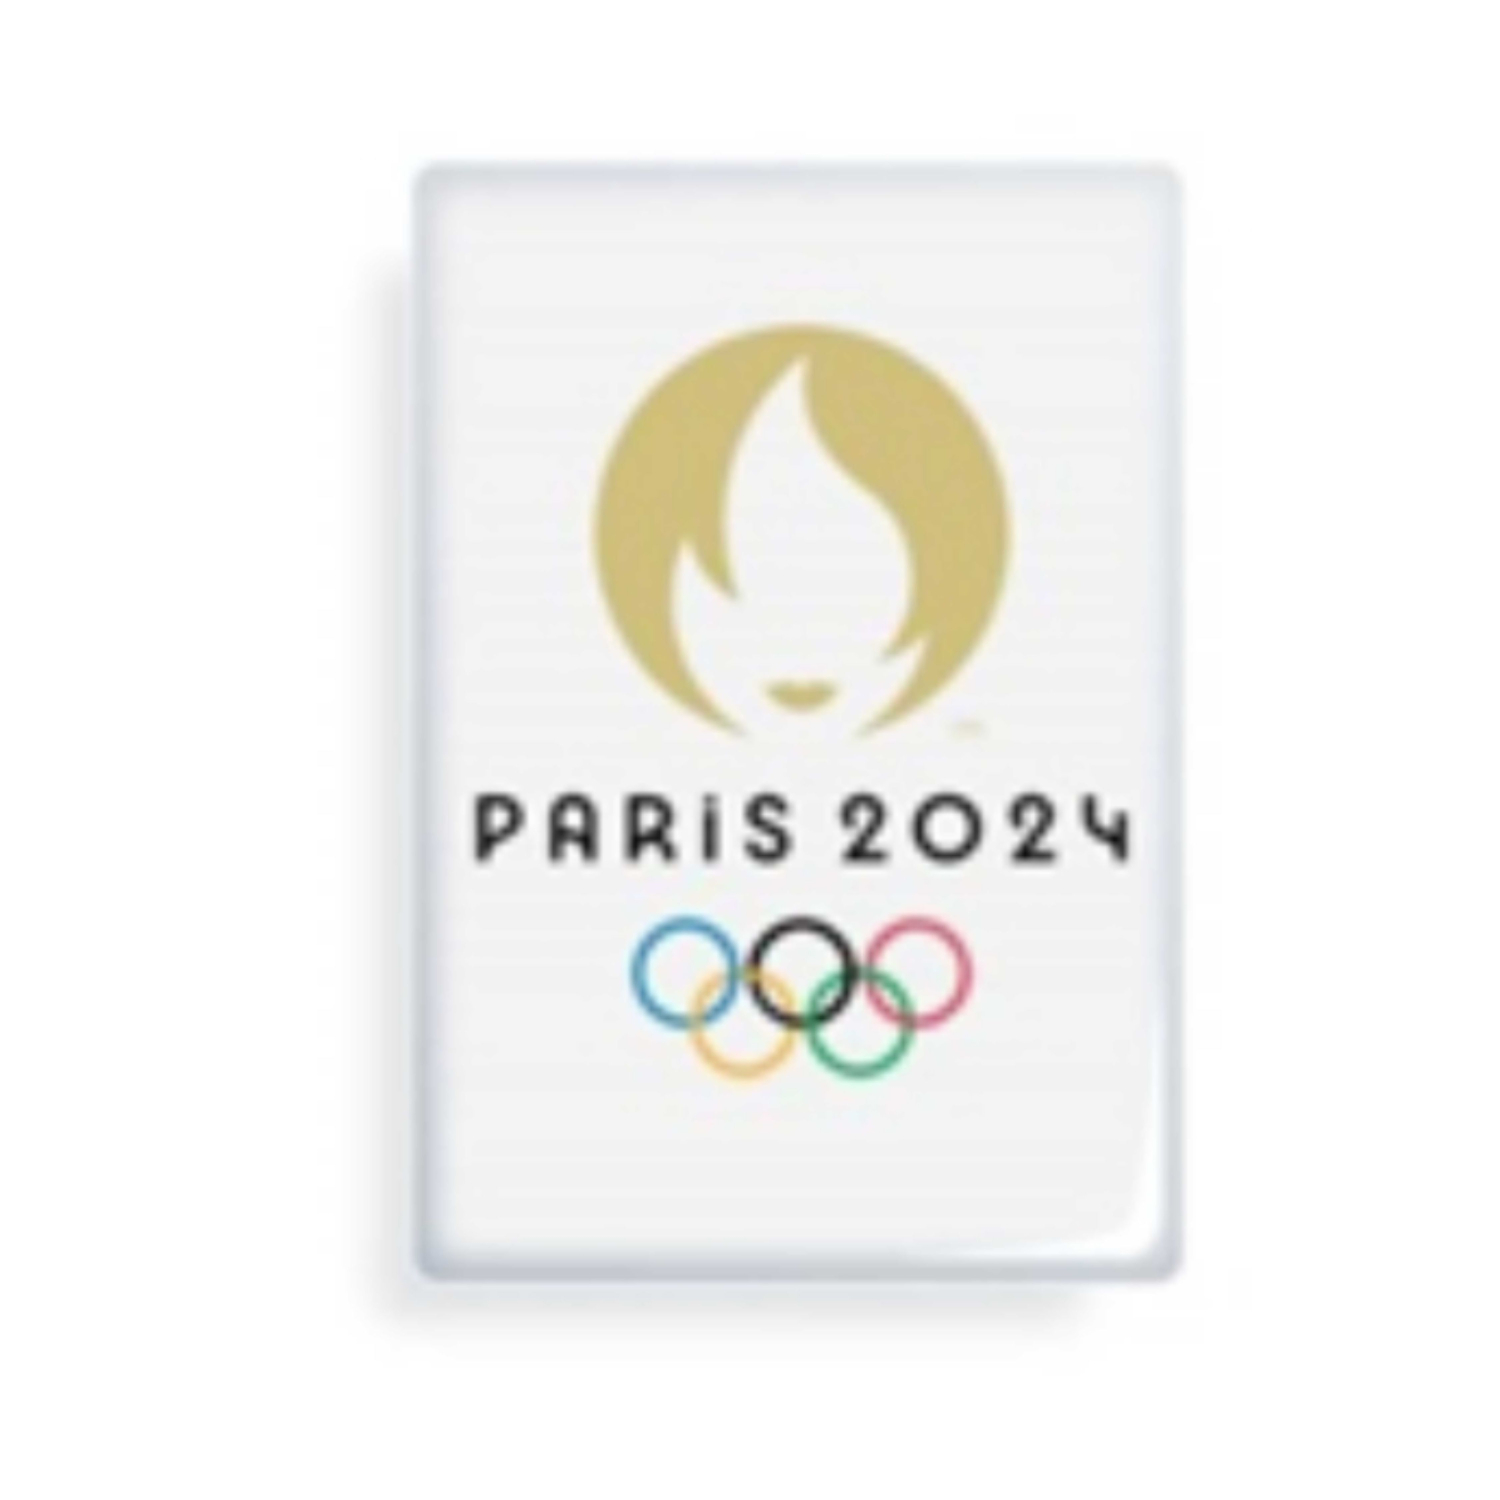 Magnet Jeux Olympiques Paris 2024 Emblème Blanc